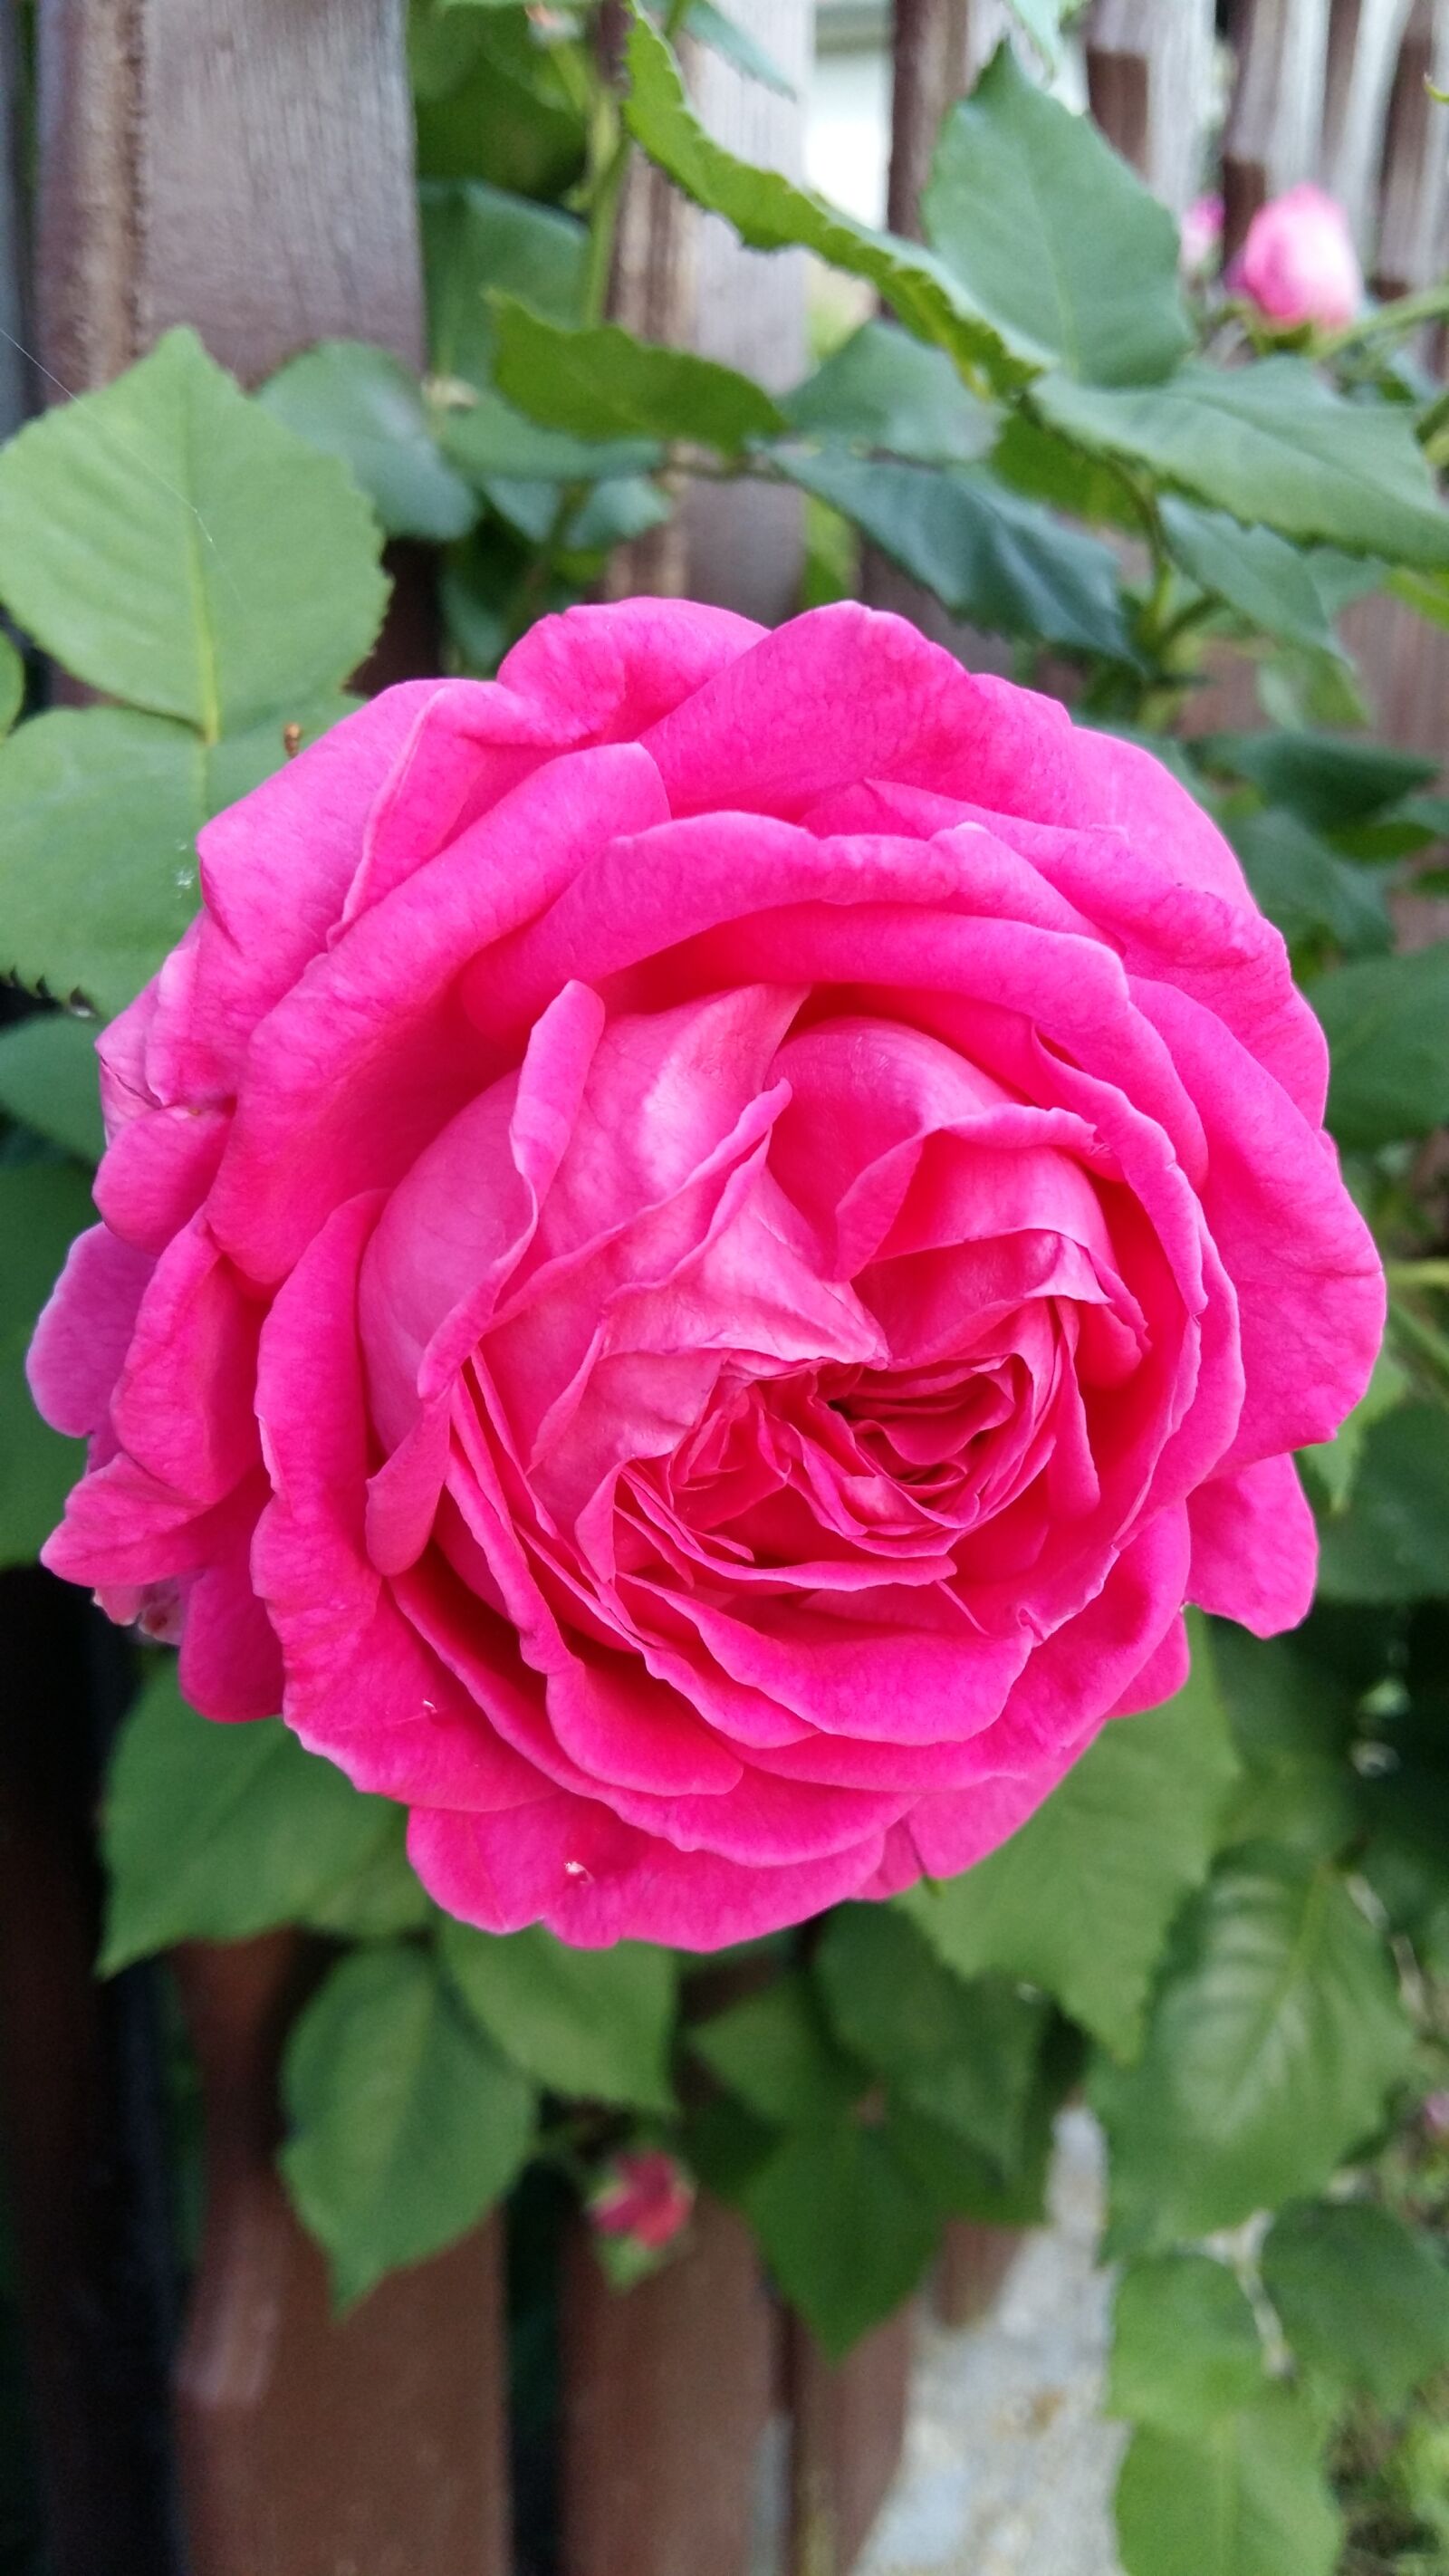 Samsung Galaxy A5 sample photo. Flower, garden, spring photography